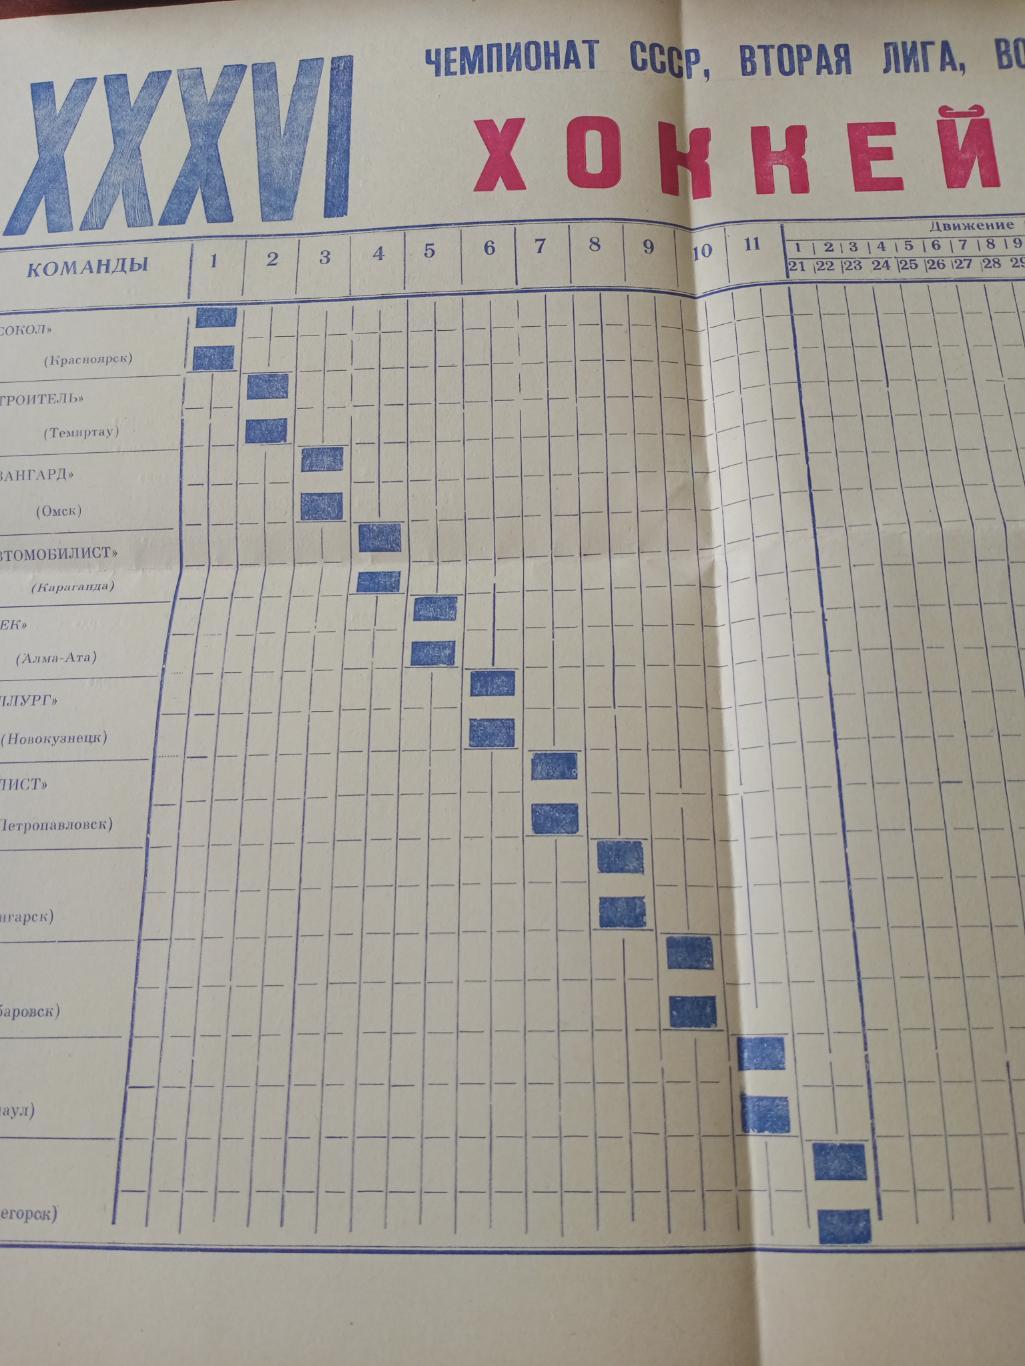 Таблица (большой формат). Омск - 1981/82